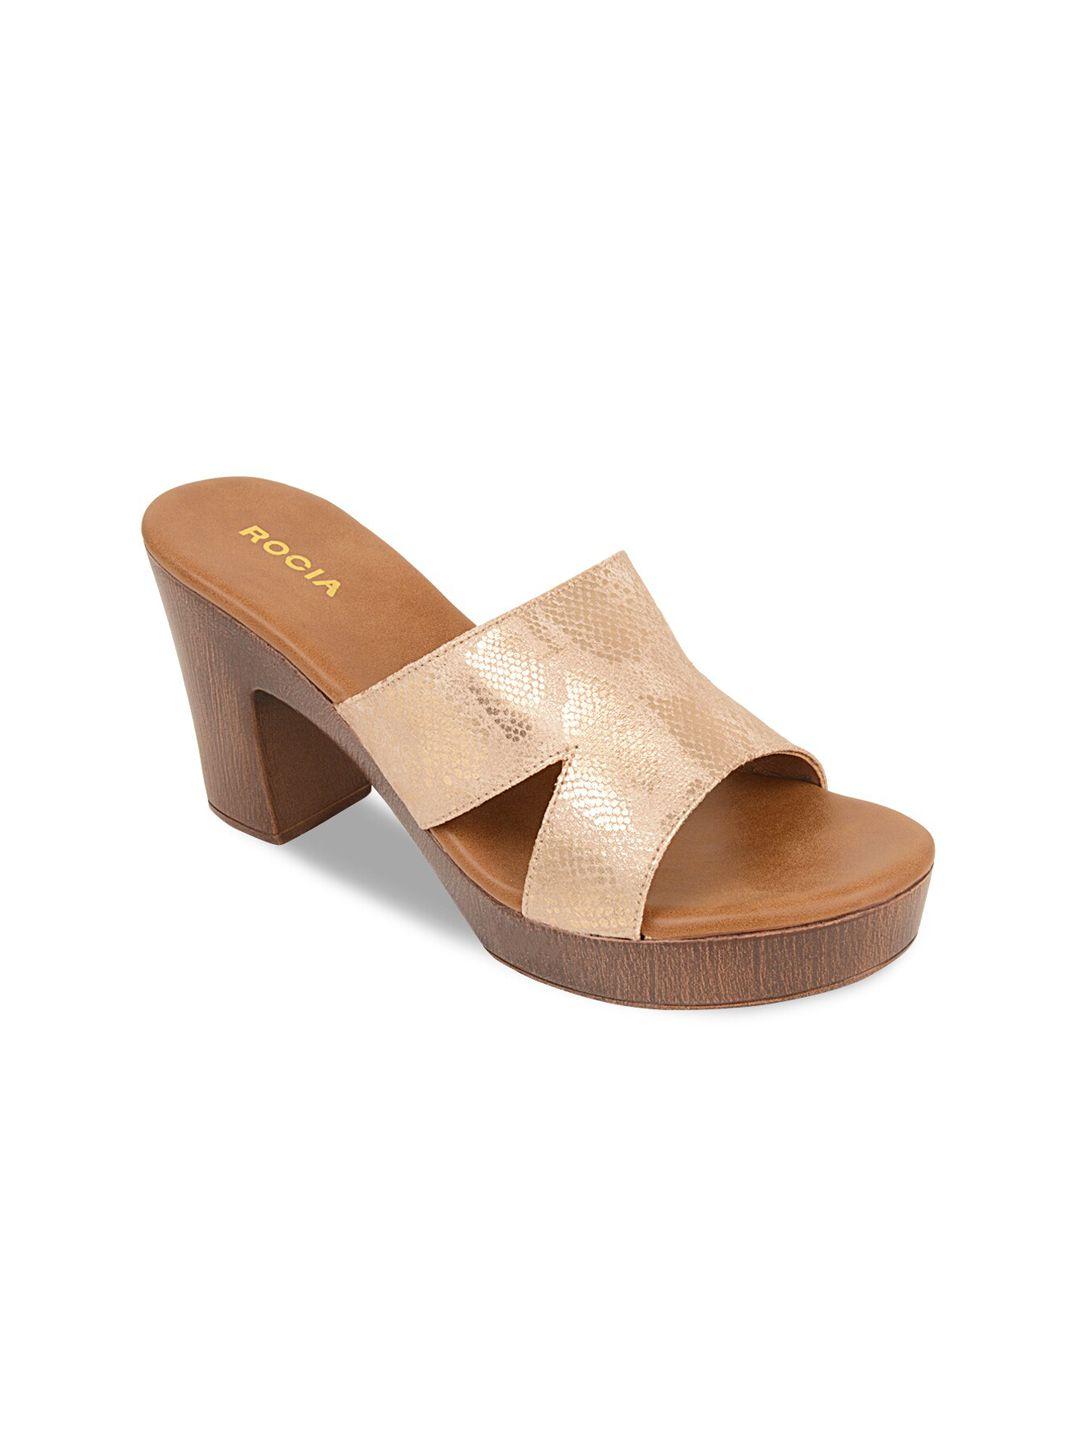 rocia silver-toned textured block sandals